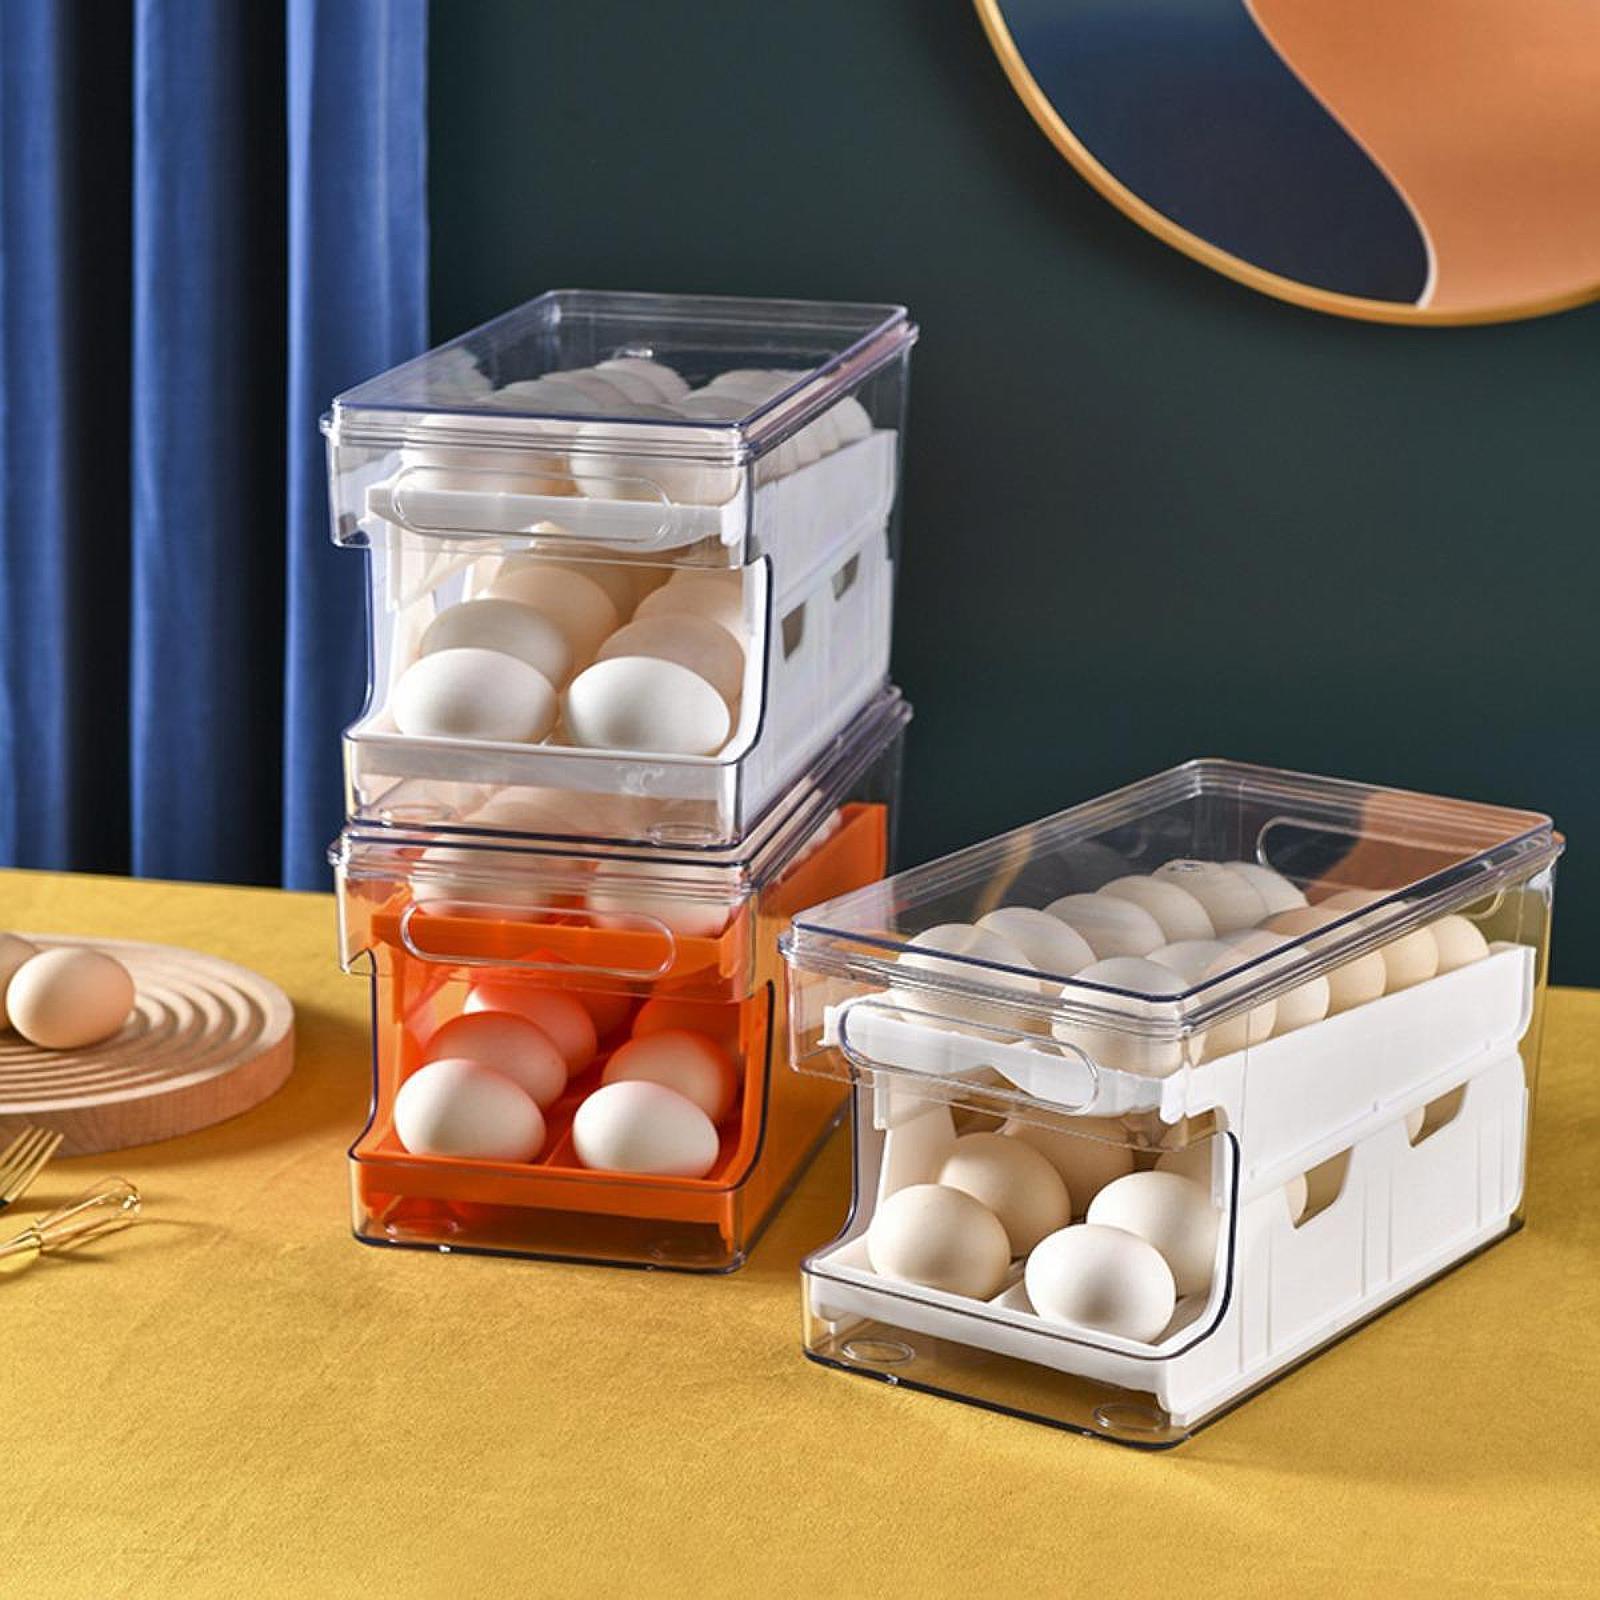 Egg Storage Container Egg Holder for Fridge for Refrigerator Kitchen Cabinet Orange